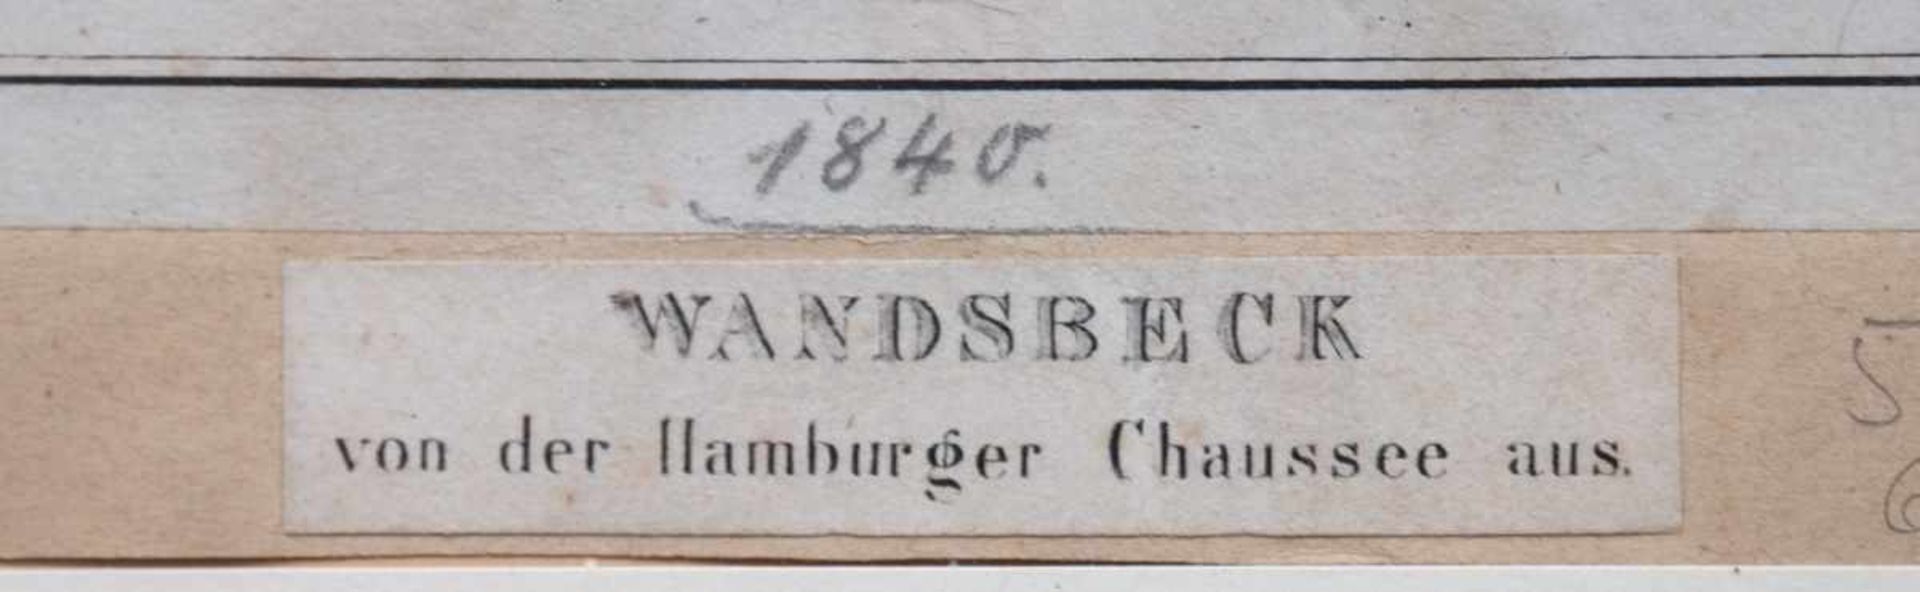 "Wandsbeck von der Hamburgr Chaussee aus", Grafik, dat. 1840, Gebrauchspuren, 22x26 cm, im - Image 3 of 3